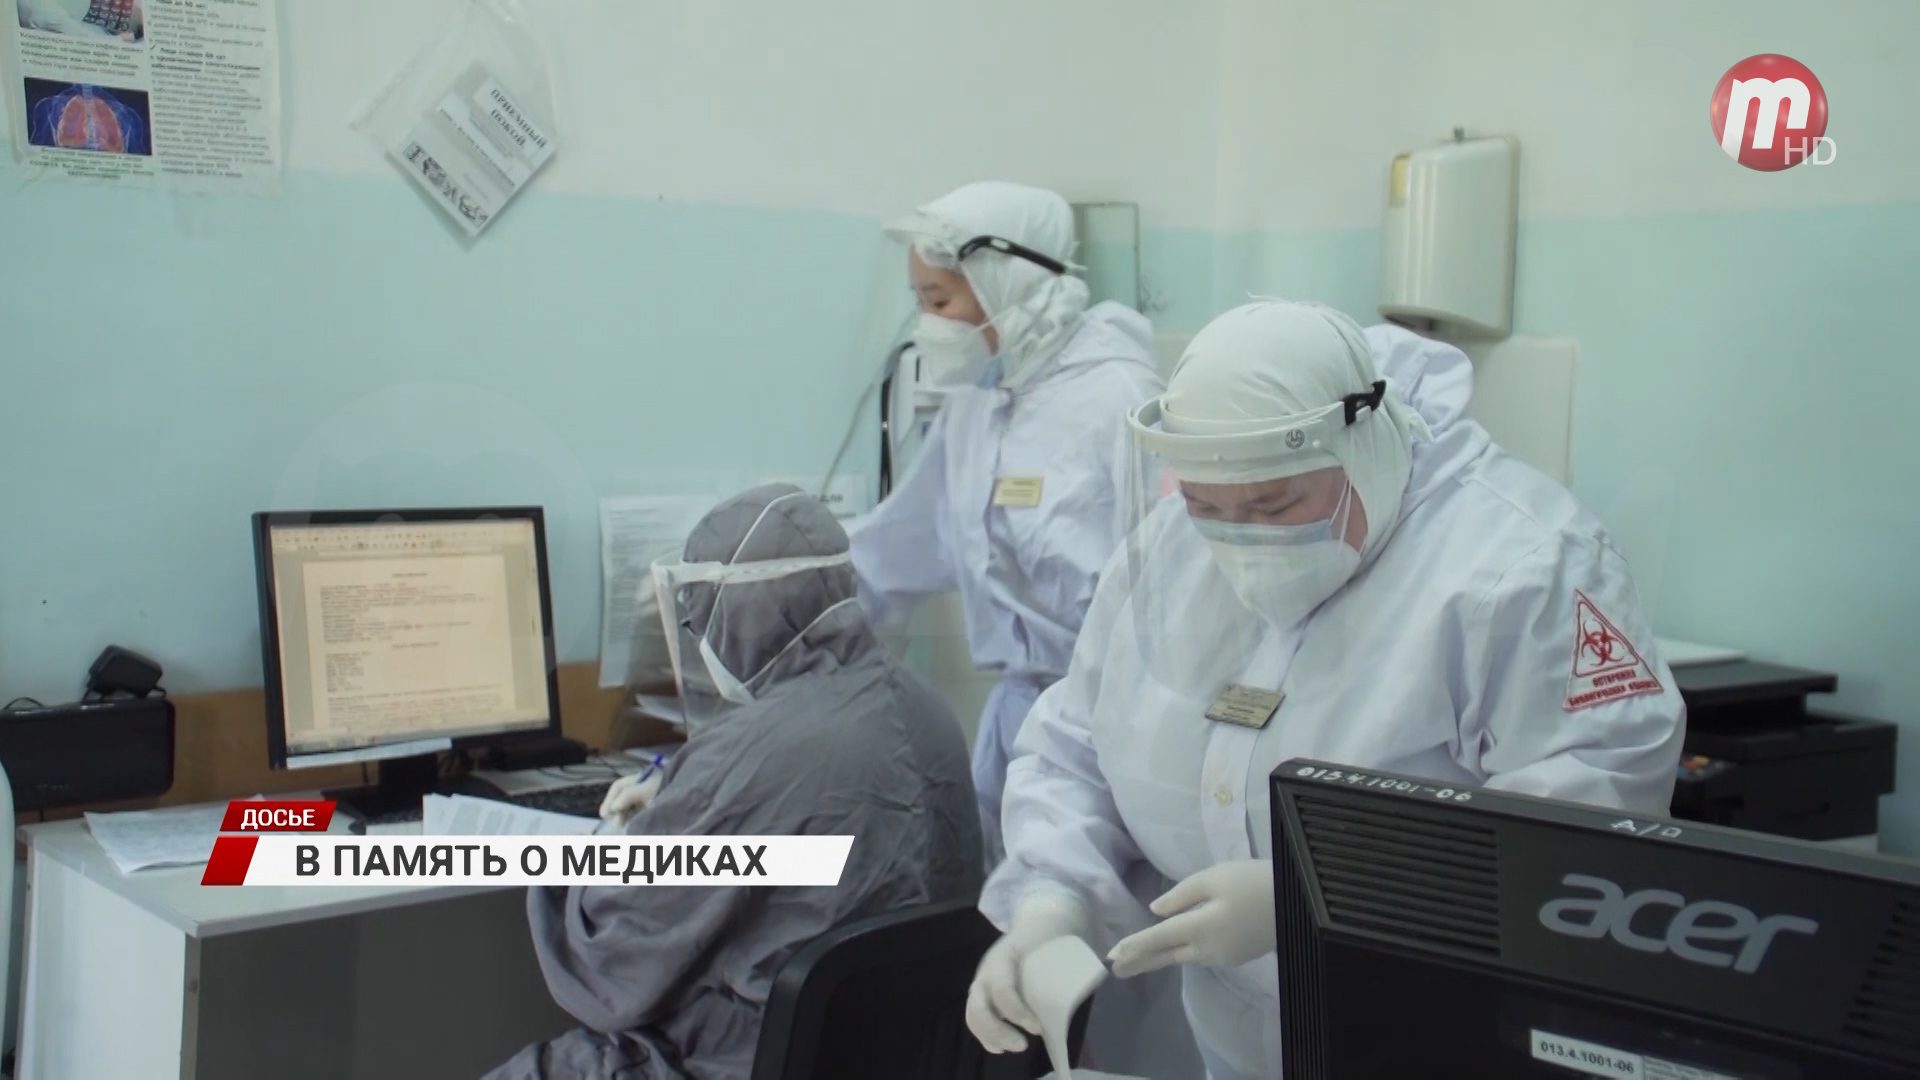 Жителям Бурятии предлагают помочь семьям медиков, погибшим во время борьбы с коронавирусом